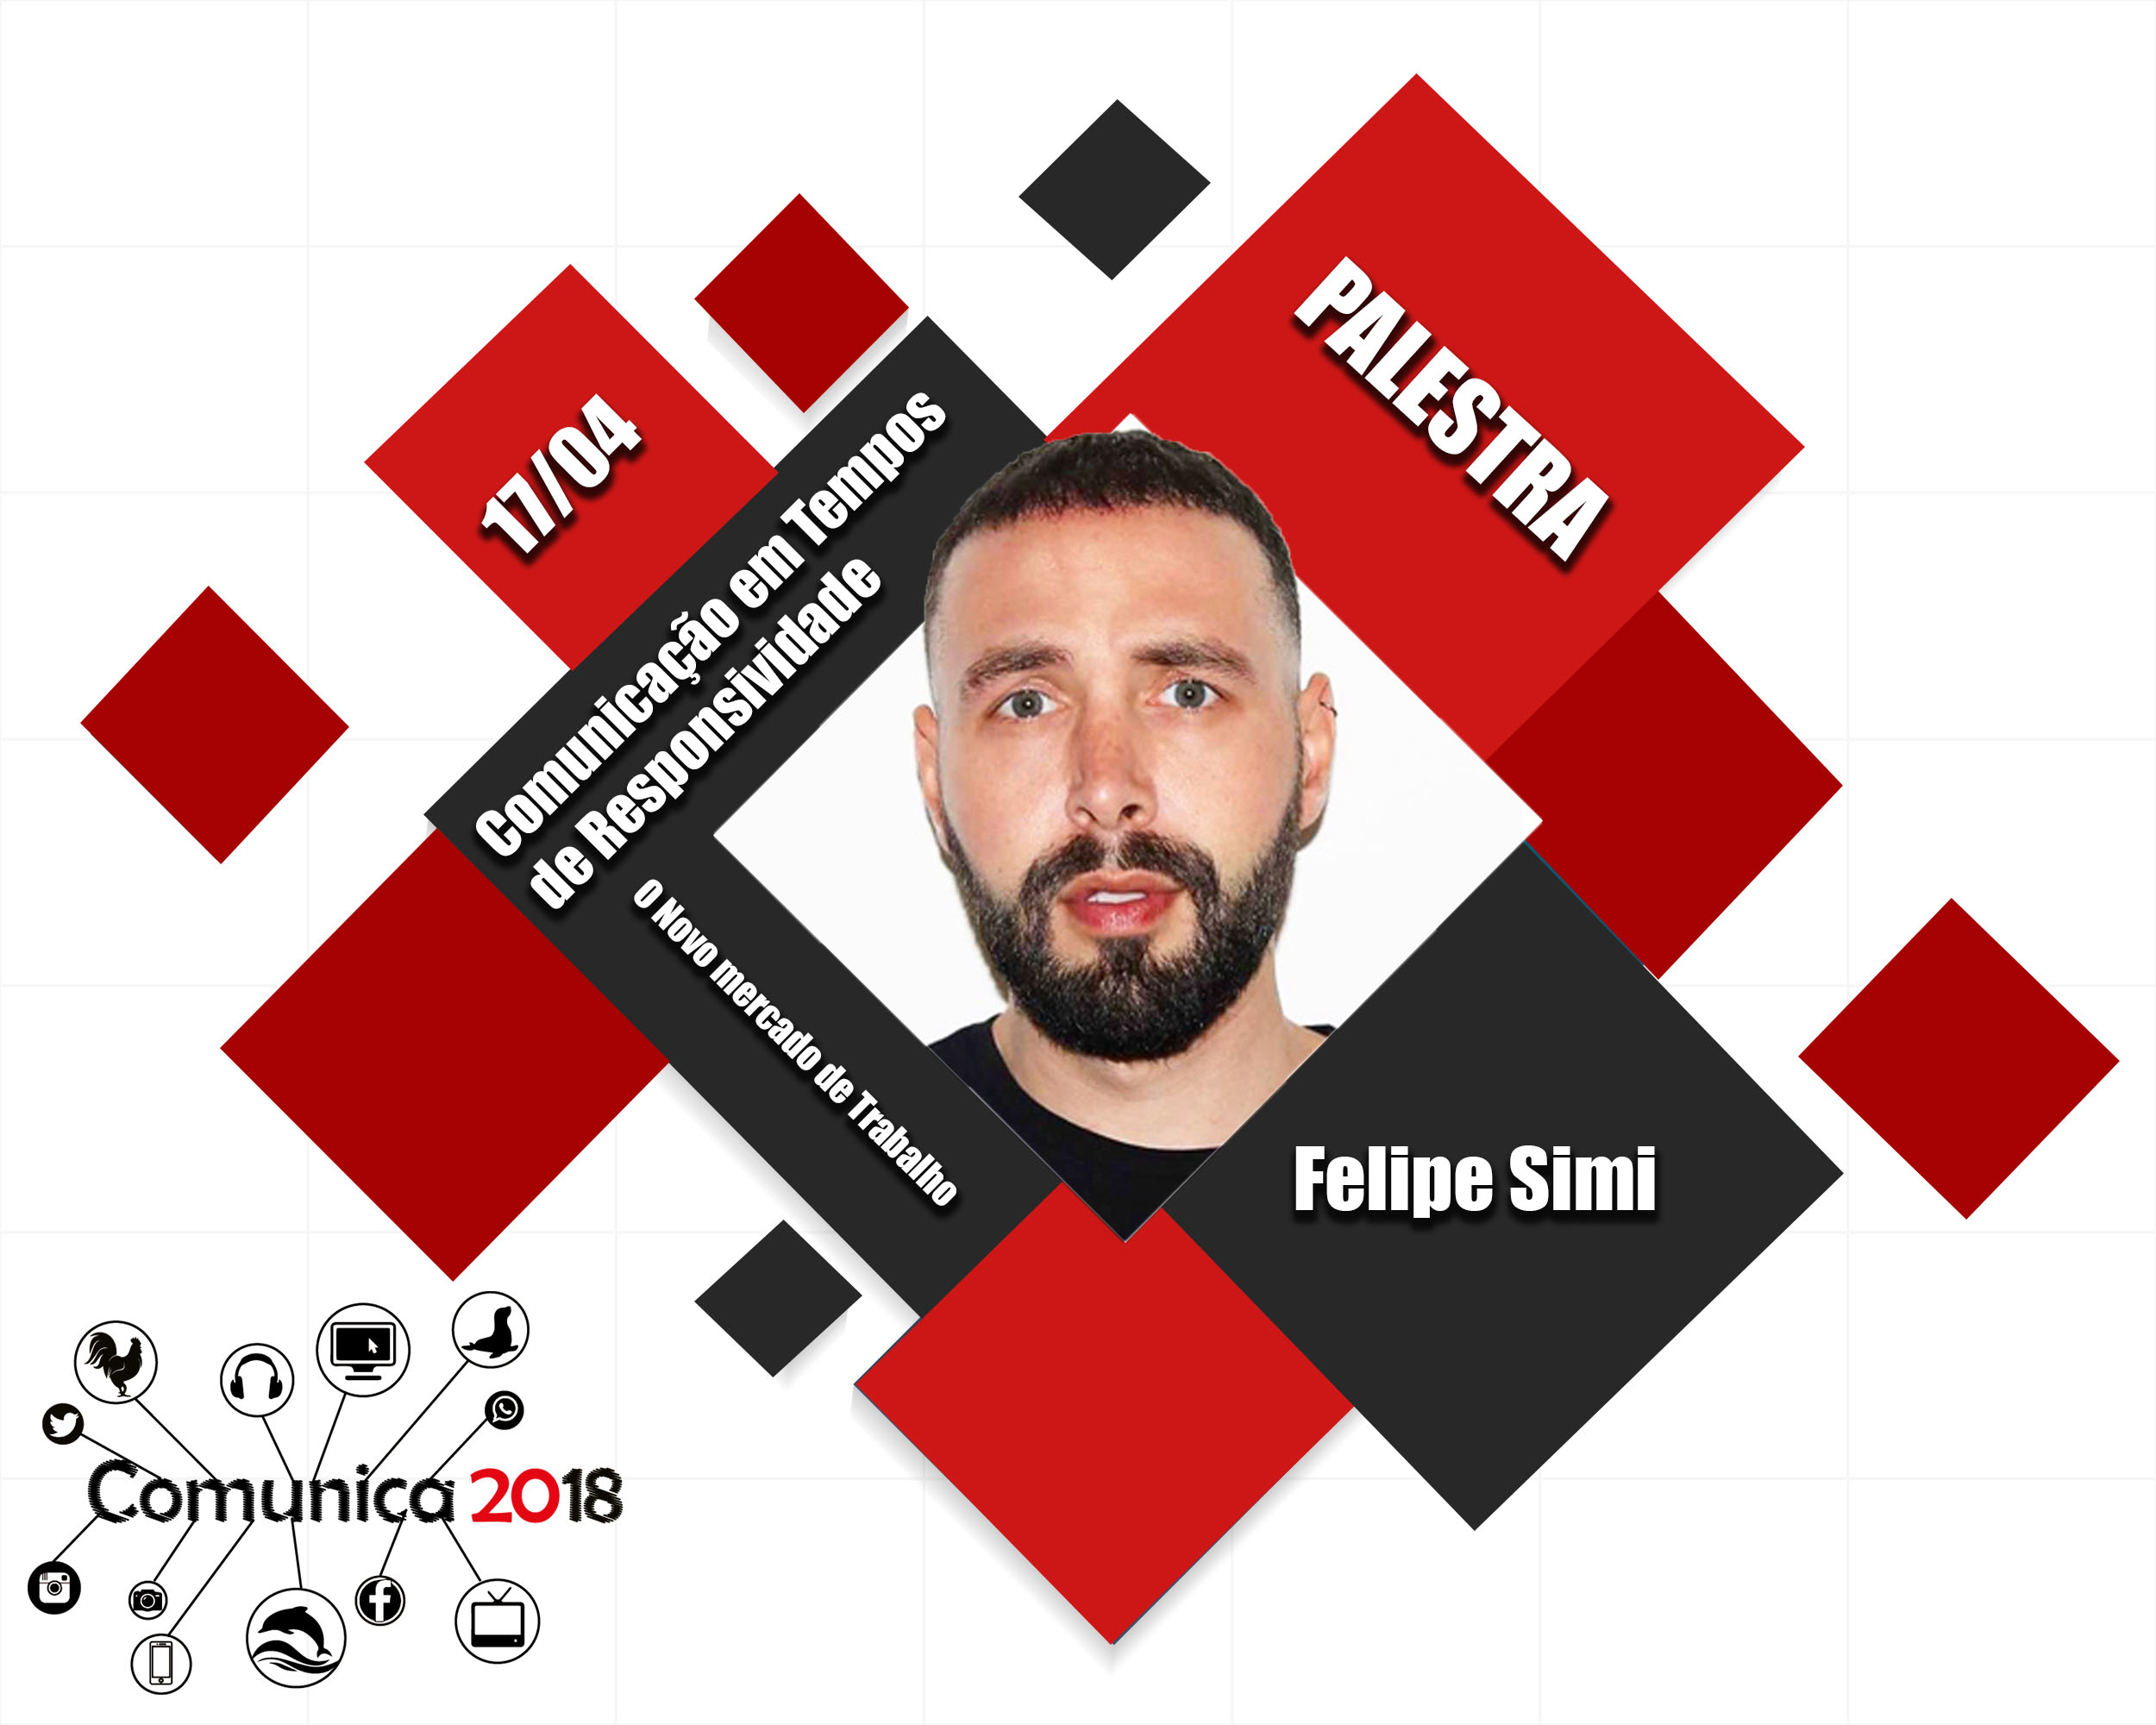 Comunica 2018 – Felipe Simi